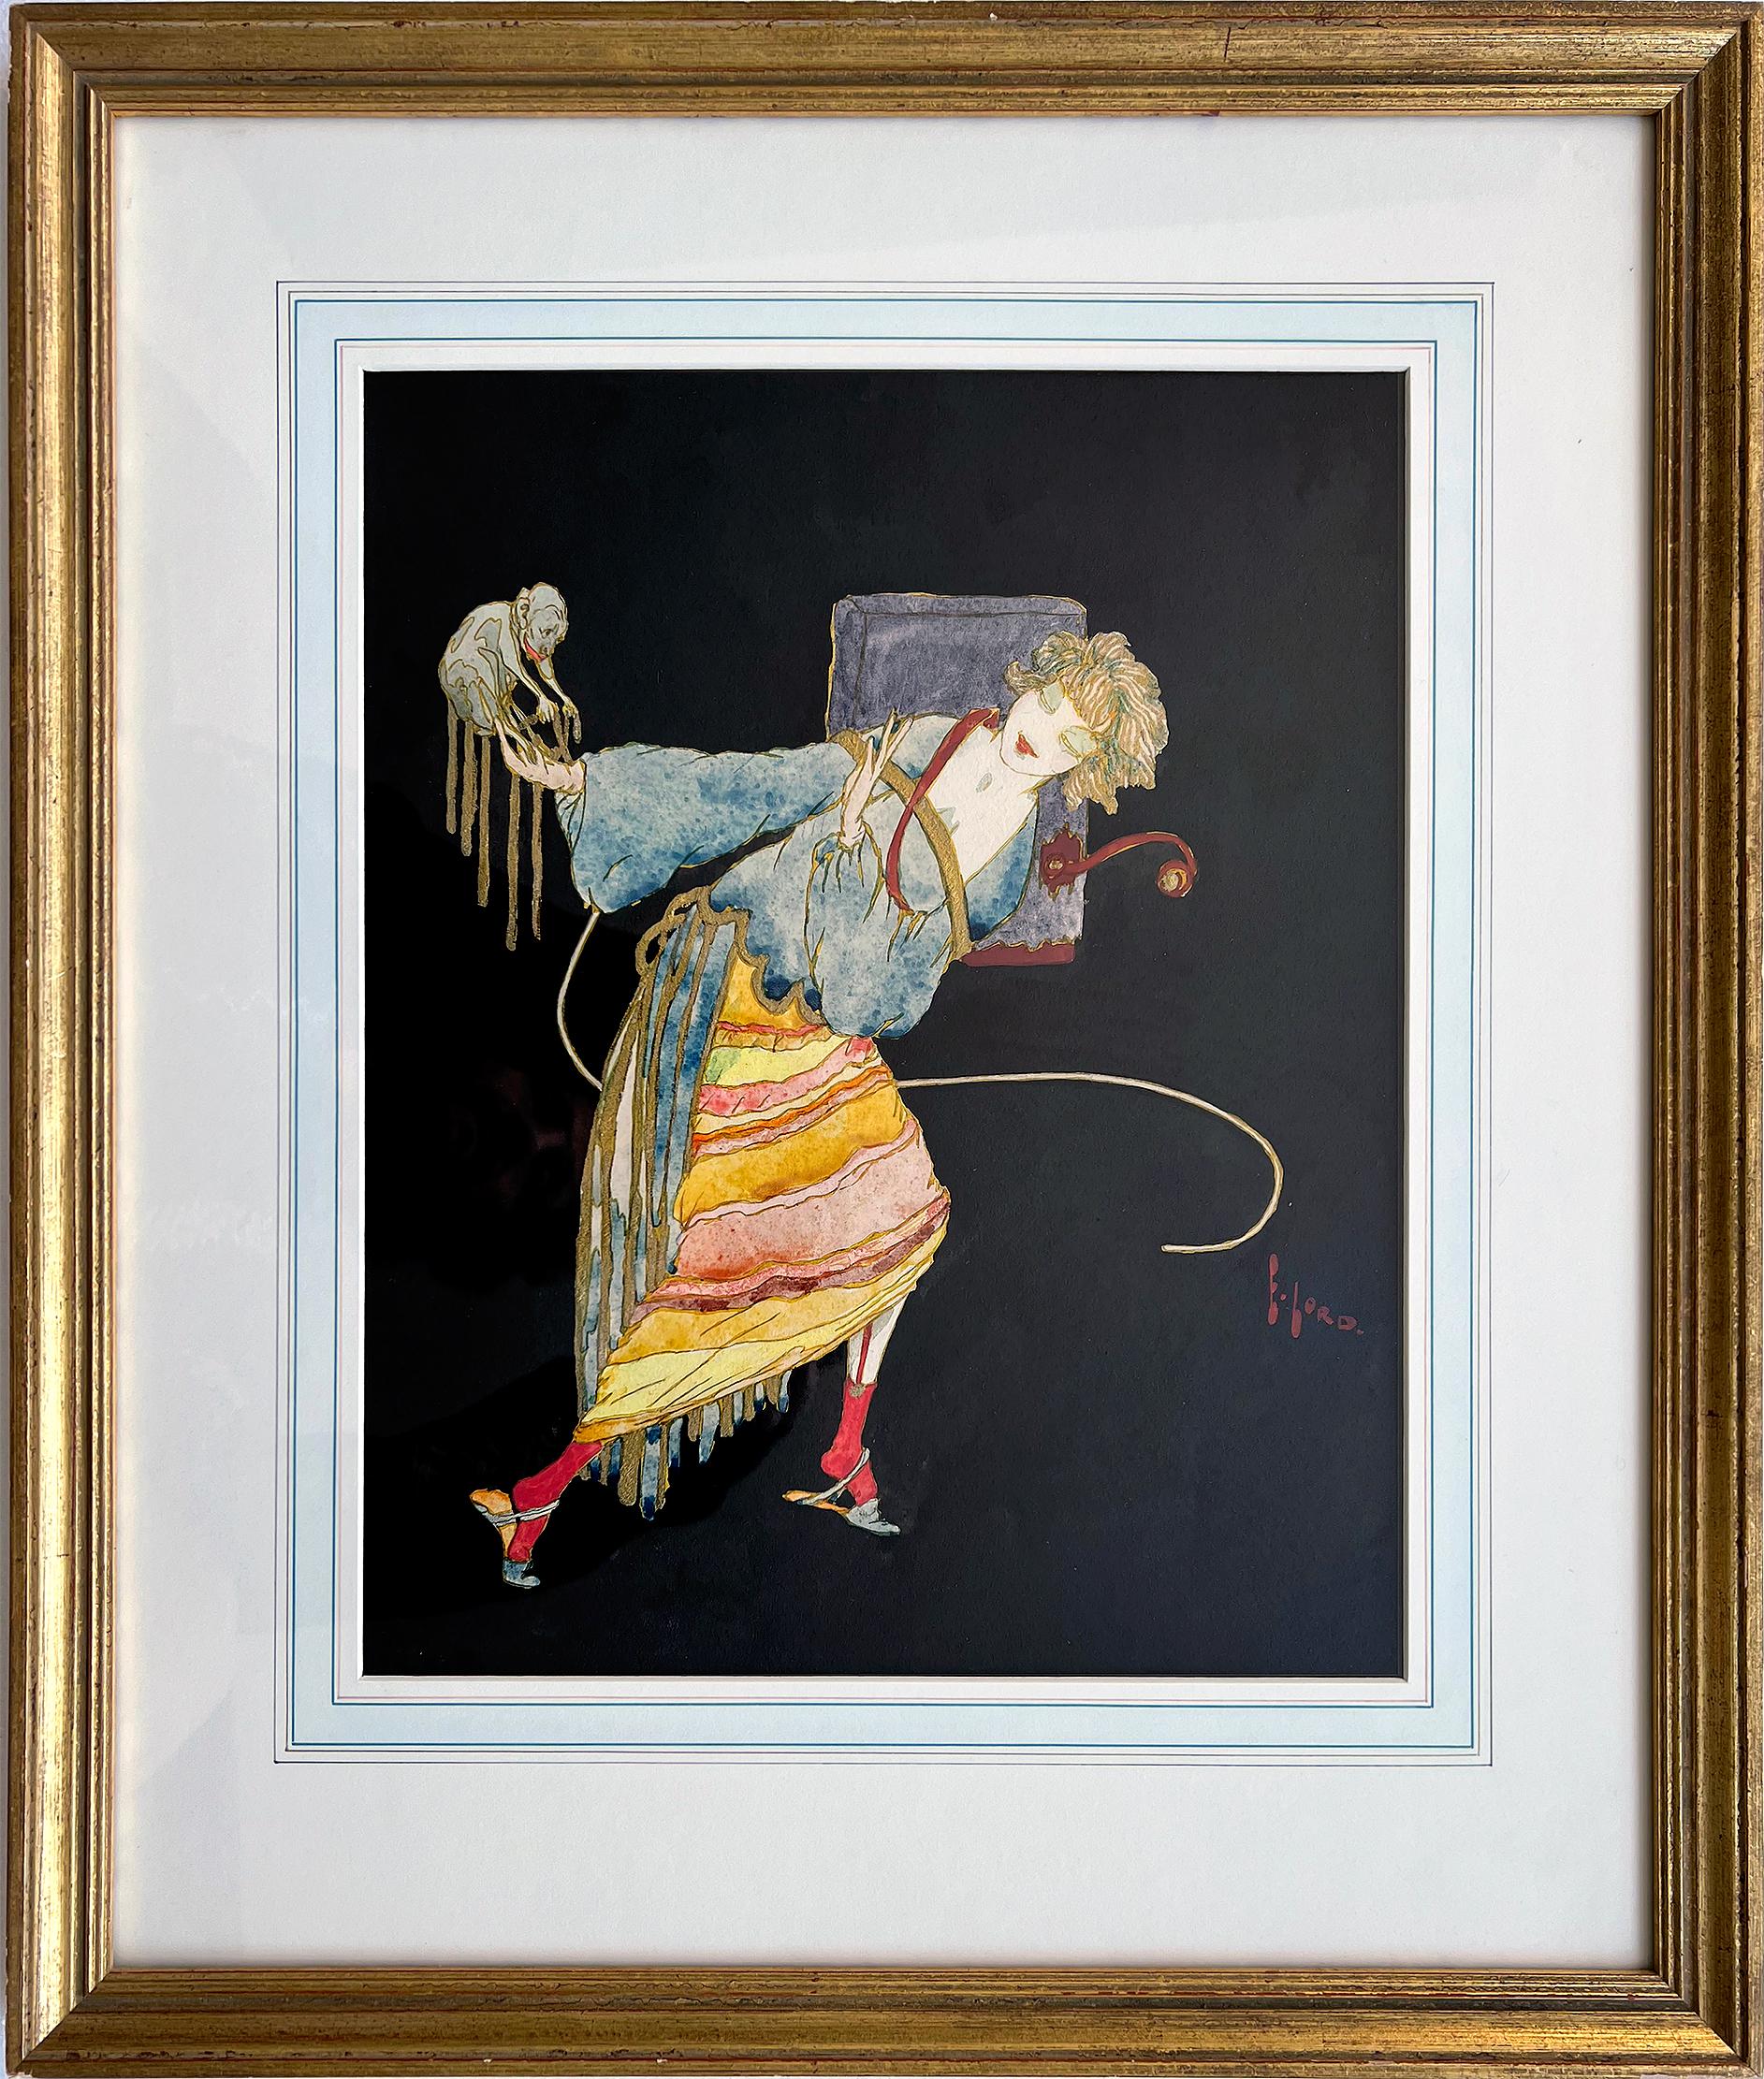 Sorgfältig wiedergegebene Art-Deco-Illustration einer stilisierten Frau (vielleicht Asiatin), die ein Gespräch mit einem kleinen Affen auf ihrem ausgestreckten Arm führt.  Signiert unten rechts.   Elegant paspeliert und gerahmt. 
Elyse Ashe Lord